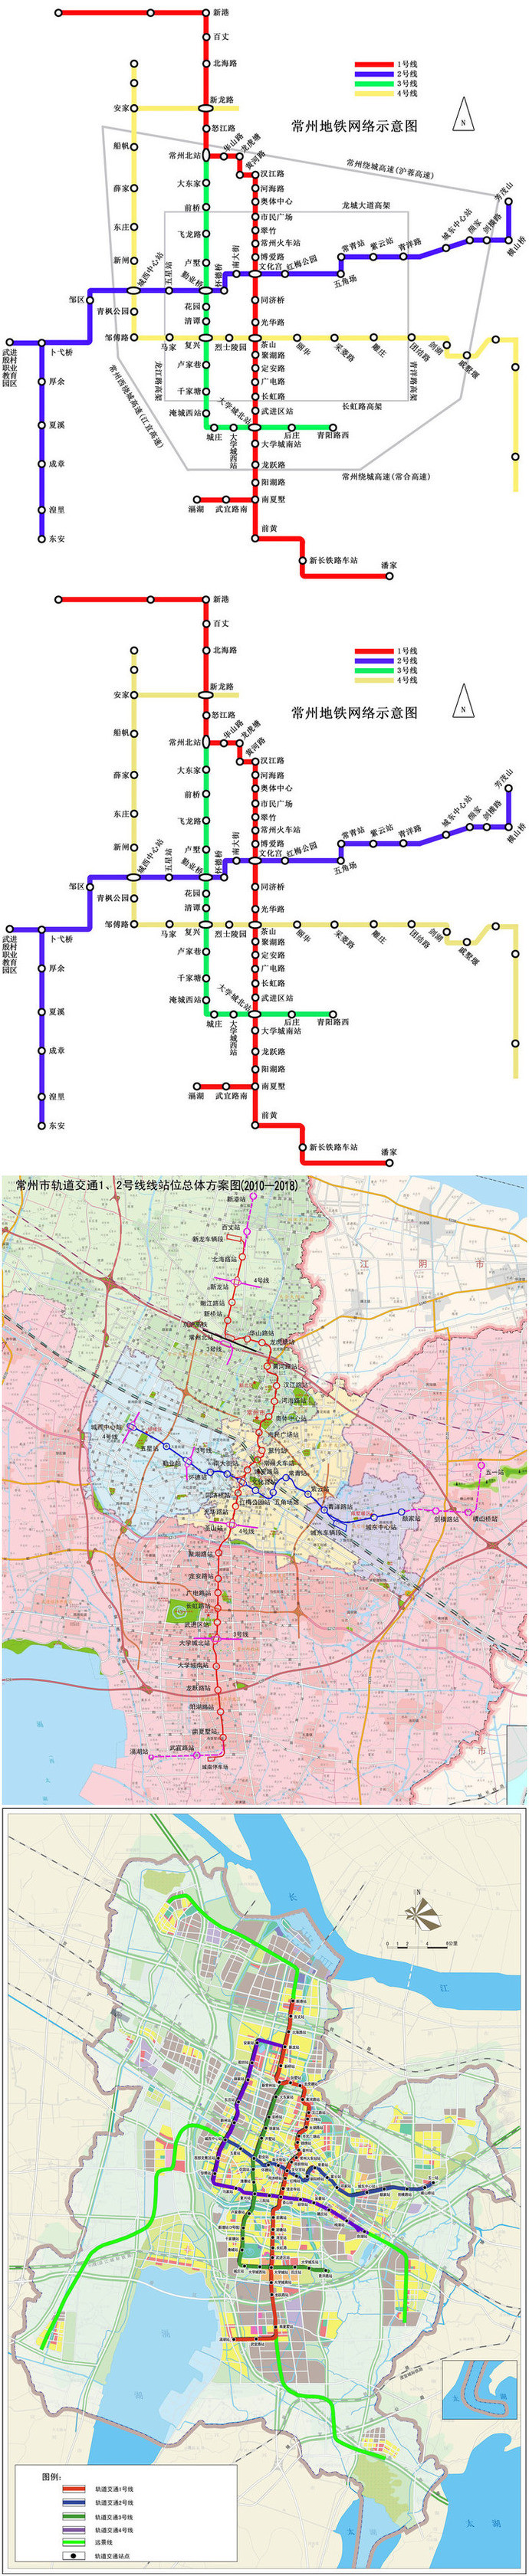 转:最新常州地铁网络规划示意图~快来看看你家离哪个站点最近啊!